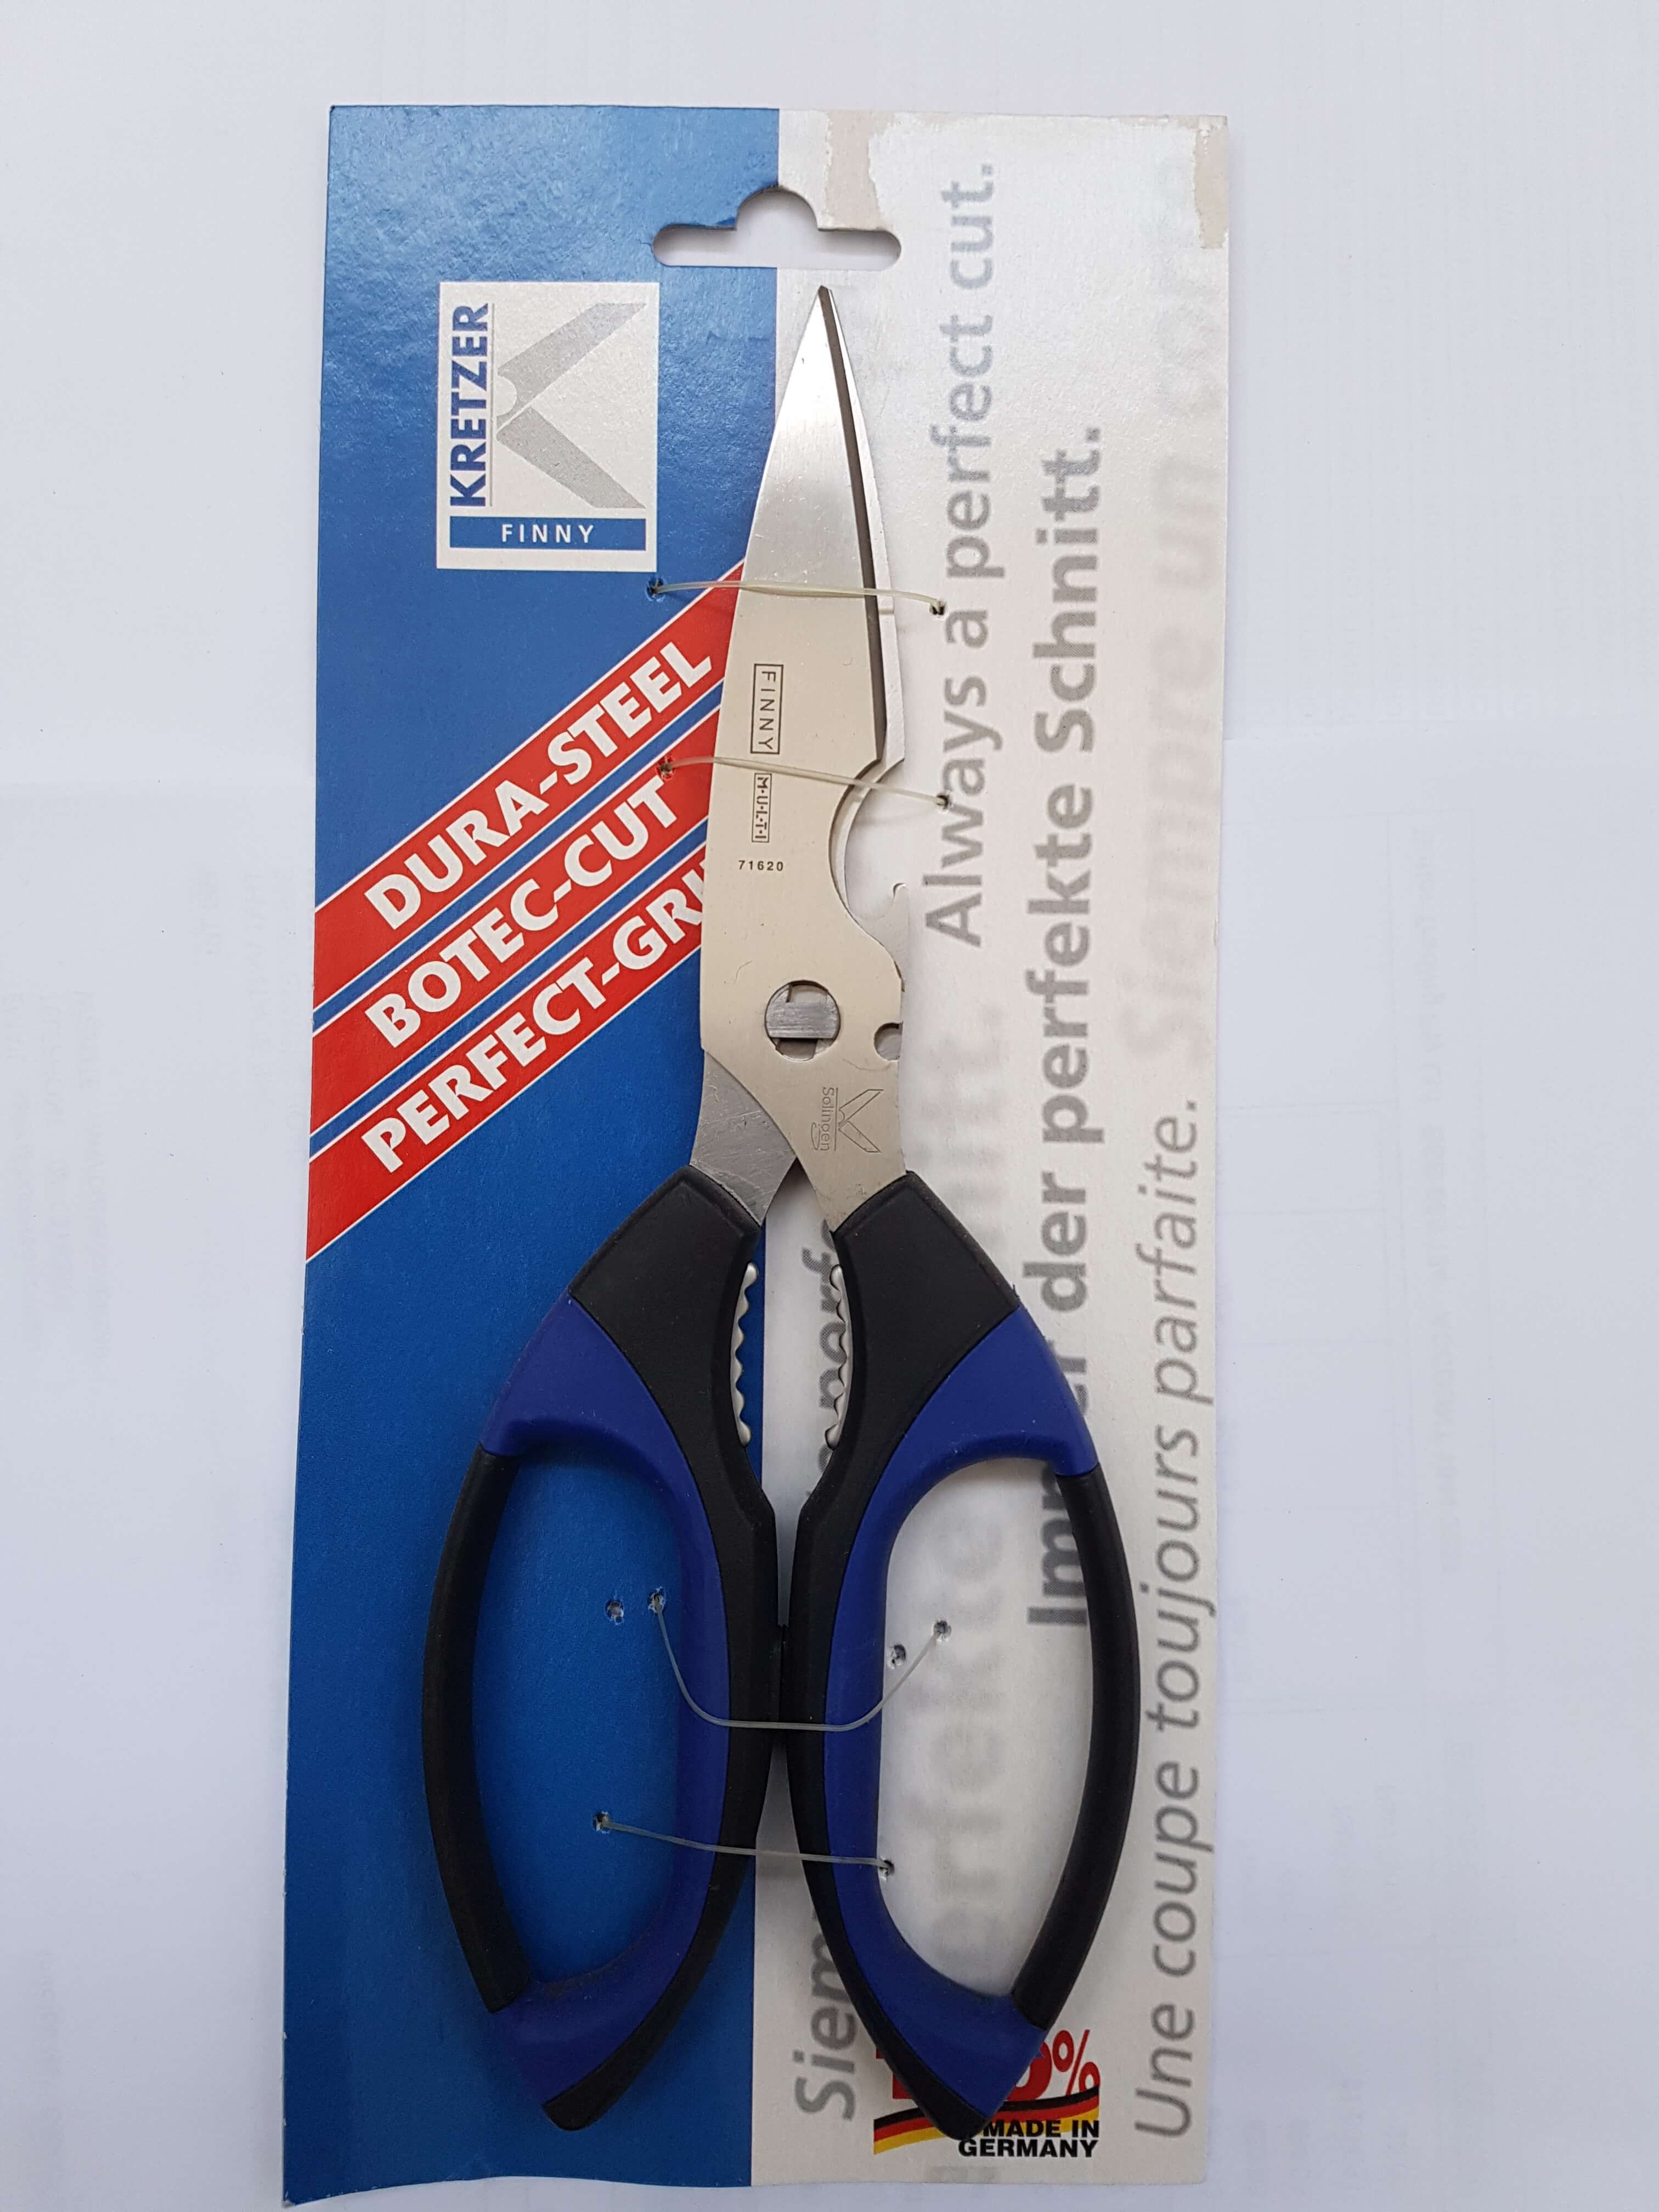 771620 Finny 8" Kitchen Scissor KRETZER GERMAN MADE CURVED